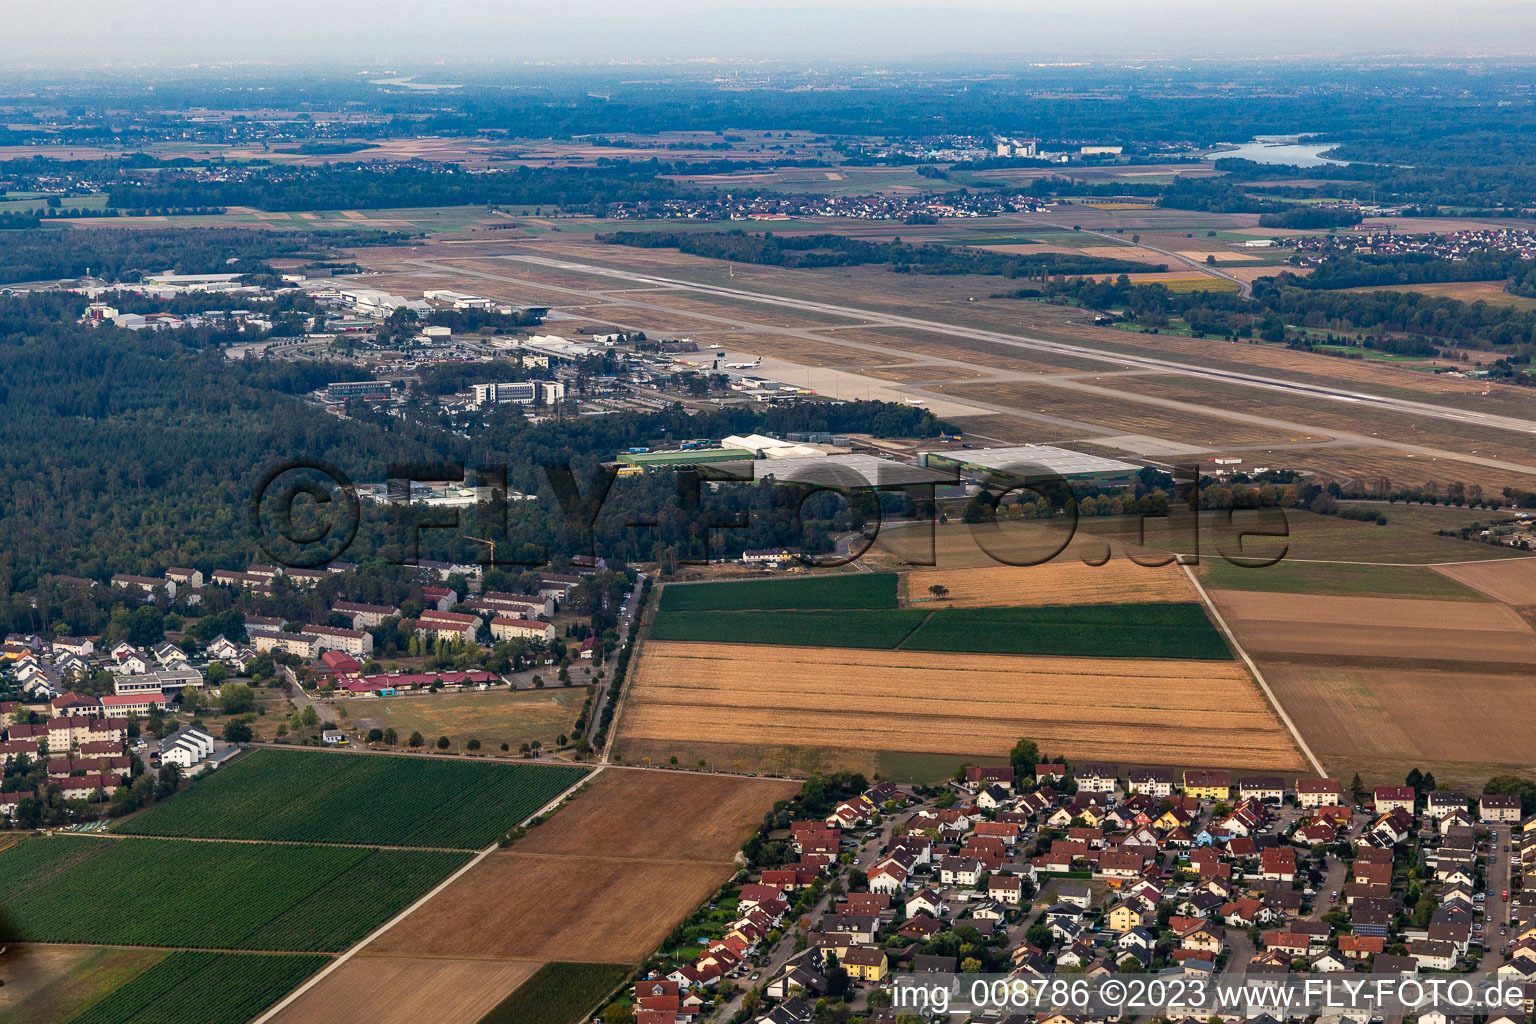 Vue aérienne de Pistes avec voies de circulation, hangars et terminaux sur le terrain de l'aéroport de Karlsruhe / Baden-Baden (FKB) à Rheinmünster dans le département Bade-Wurtemberg, Allemagne